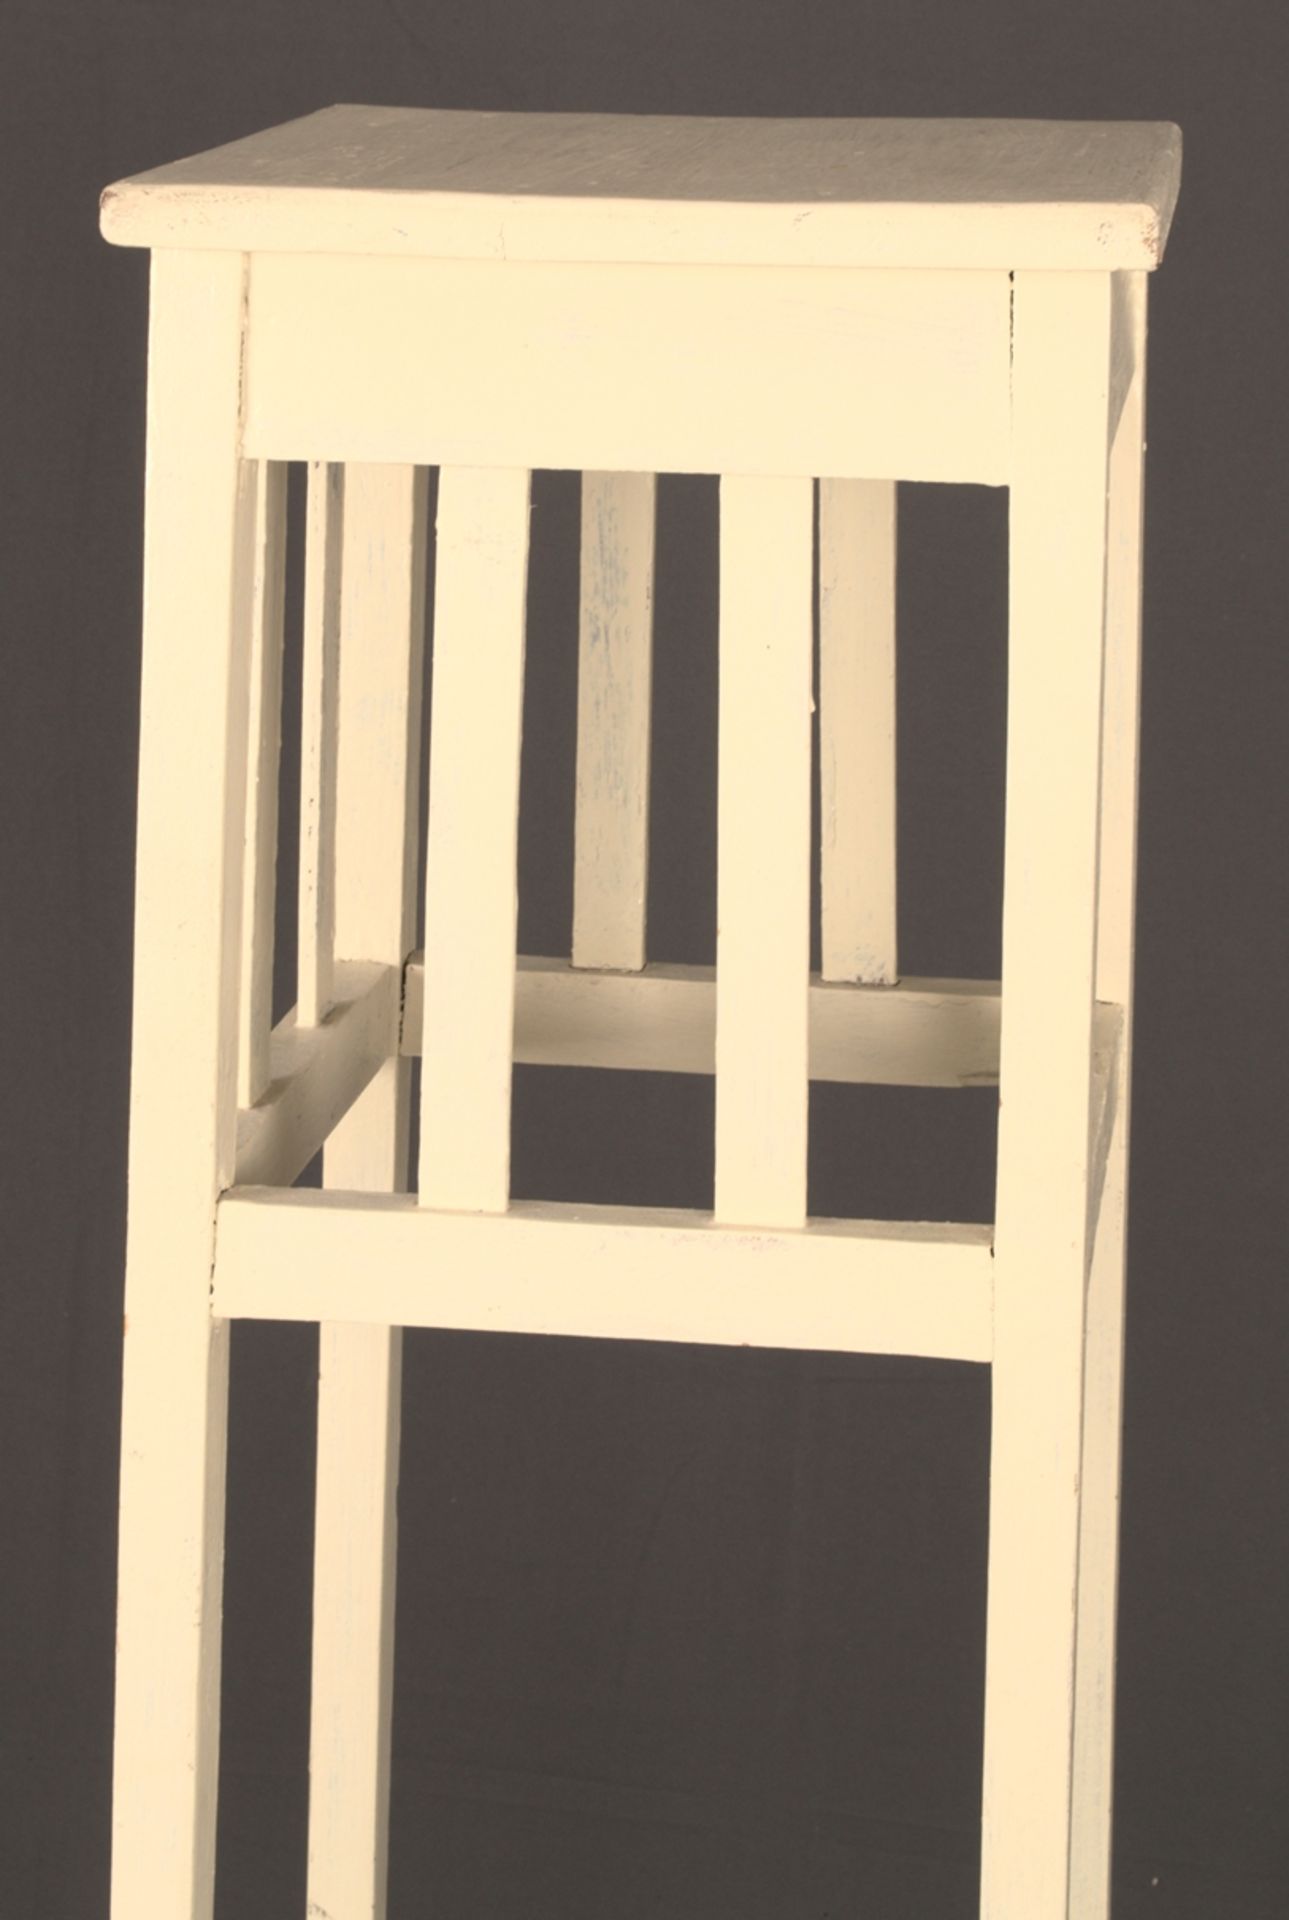 Blumenständer. Weiß lackiertes Holzgestell mit zwei Ablagen/Standflächen von je ca. 26 x 27 cm, max. - Bild 4 aus 5